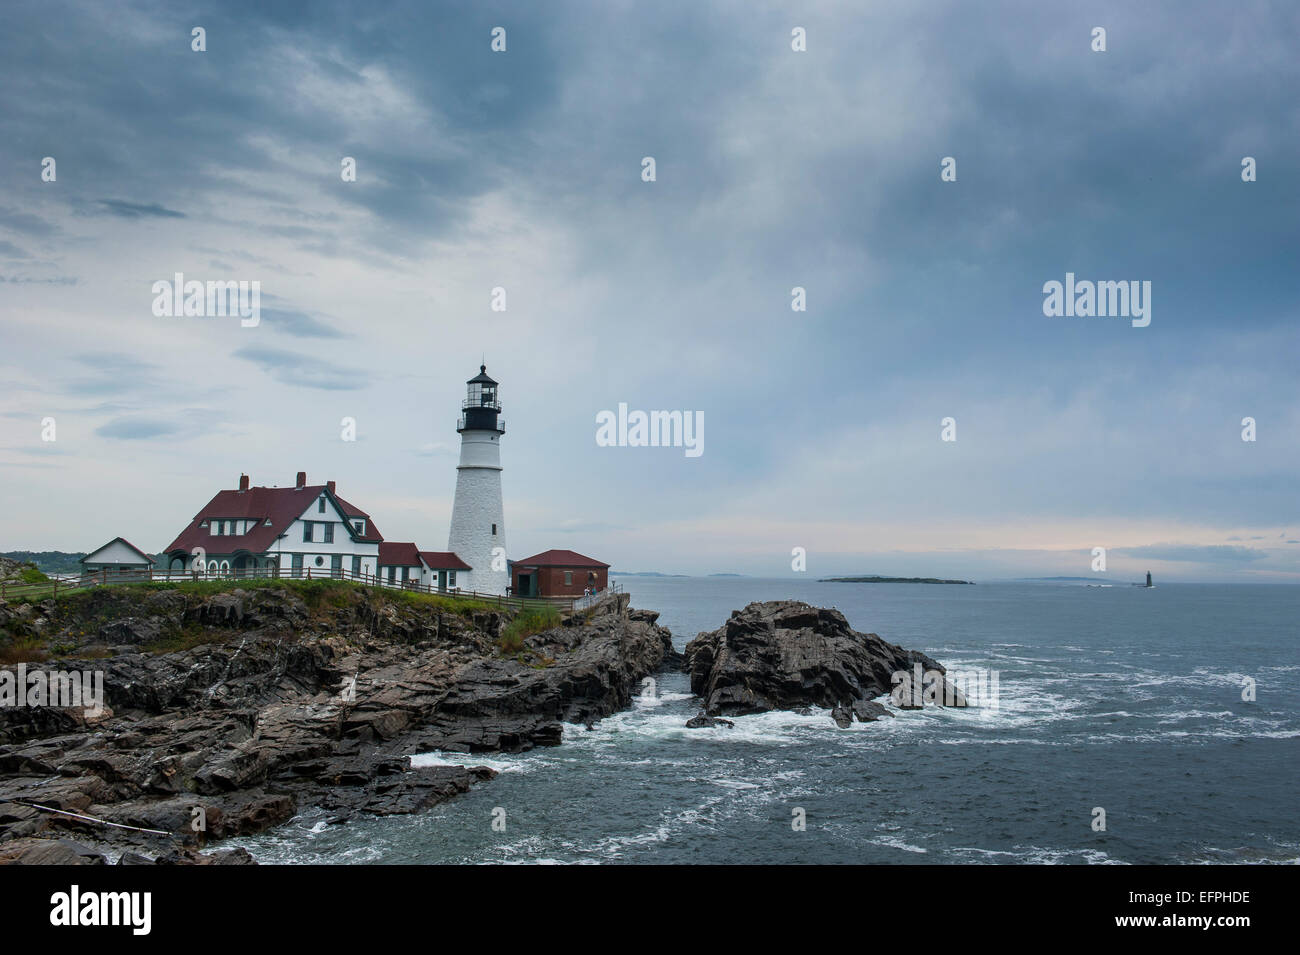 Portland Head Light, phare historique de Cape Elizabeth, dans le Maine, la Nouvelle Angleterre, États-Unis d'Amérique, Amérique du Nord Banque D'Images